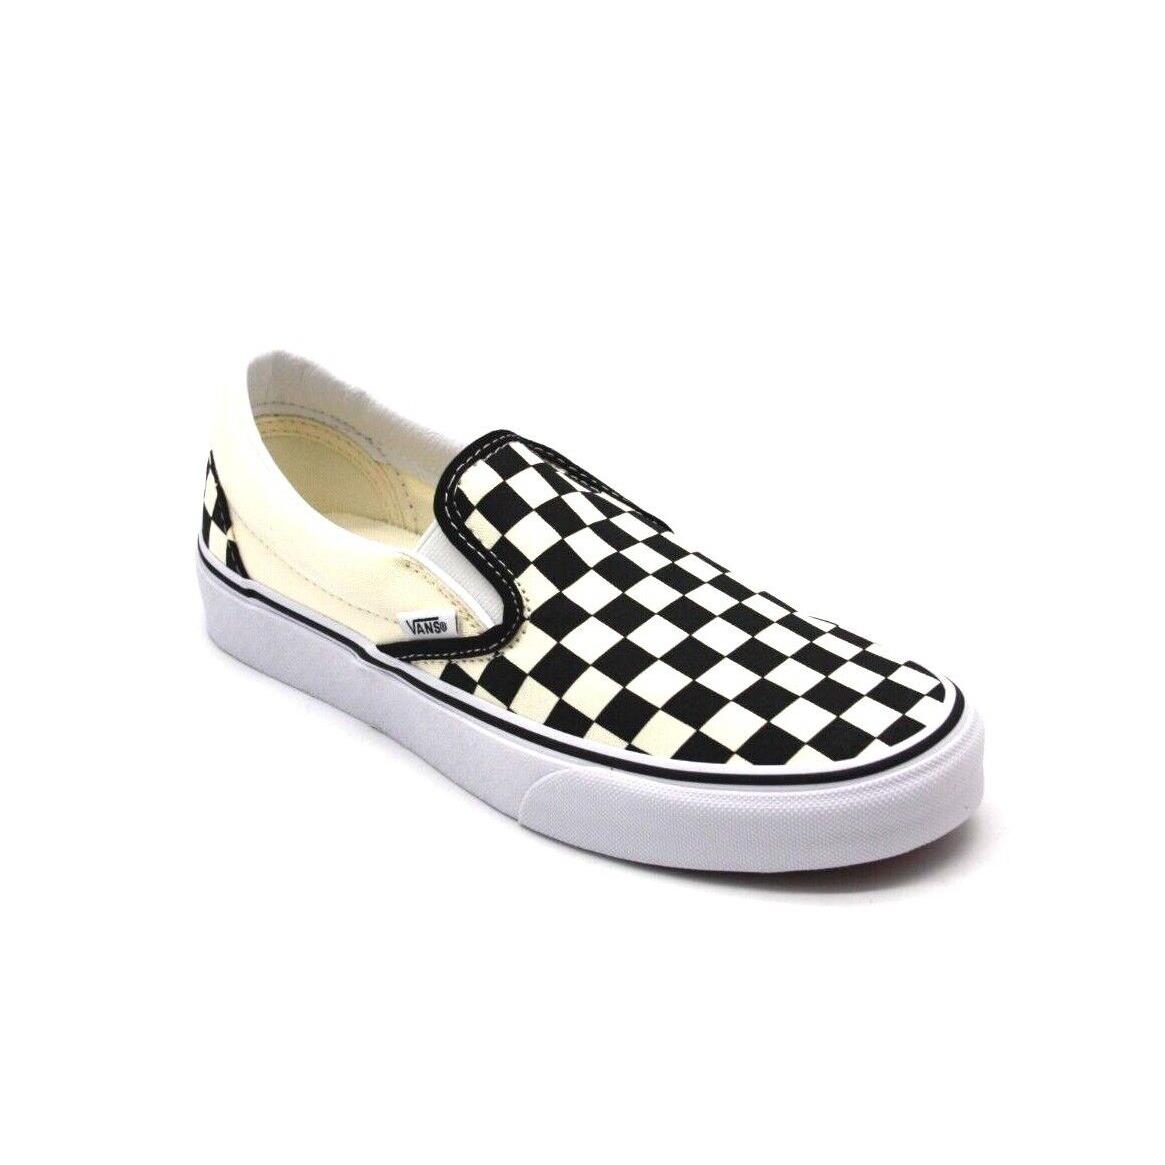 Vans Slip On Checkerboard Skate Shoe Black / White Unisex